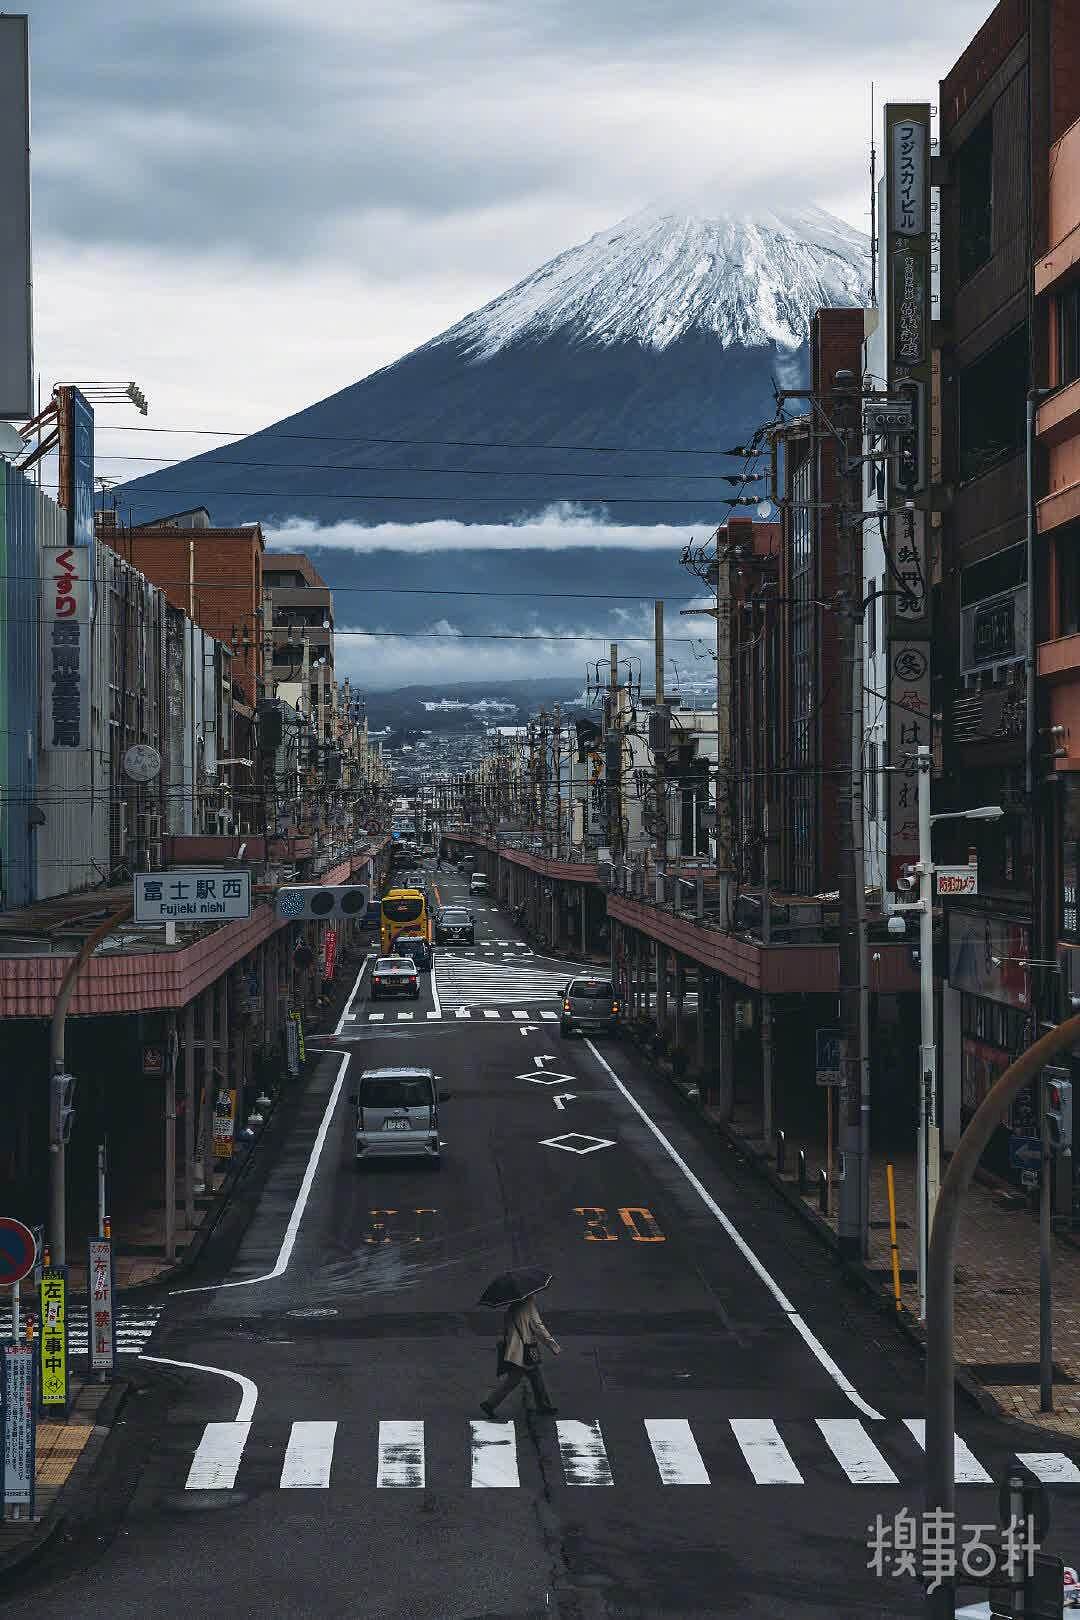 阴天的富士山也很浮世